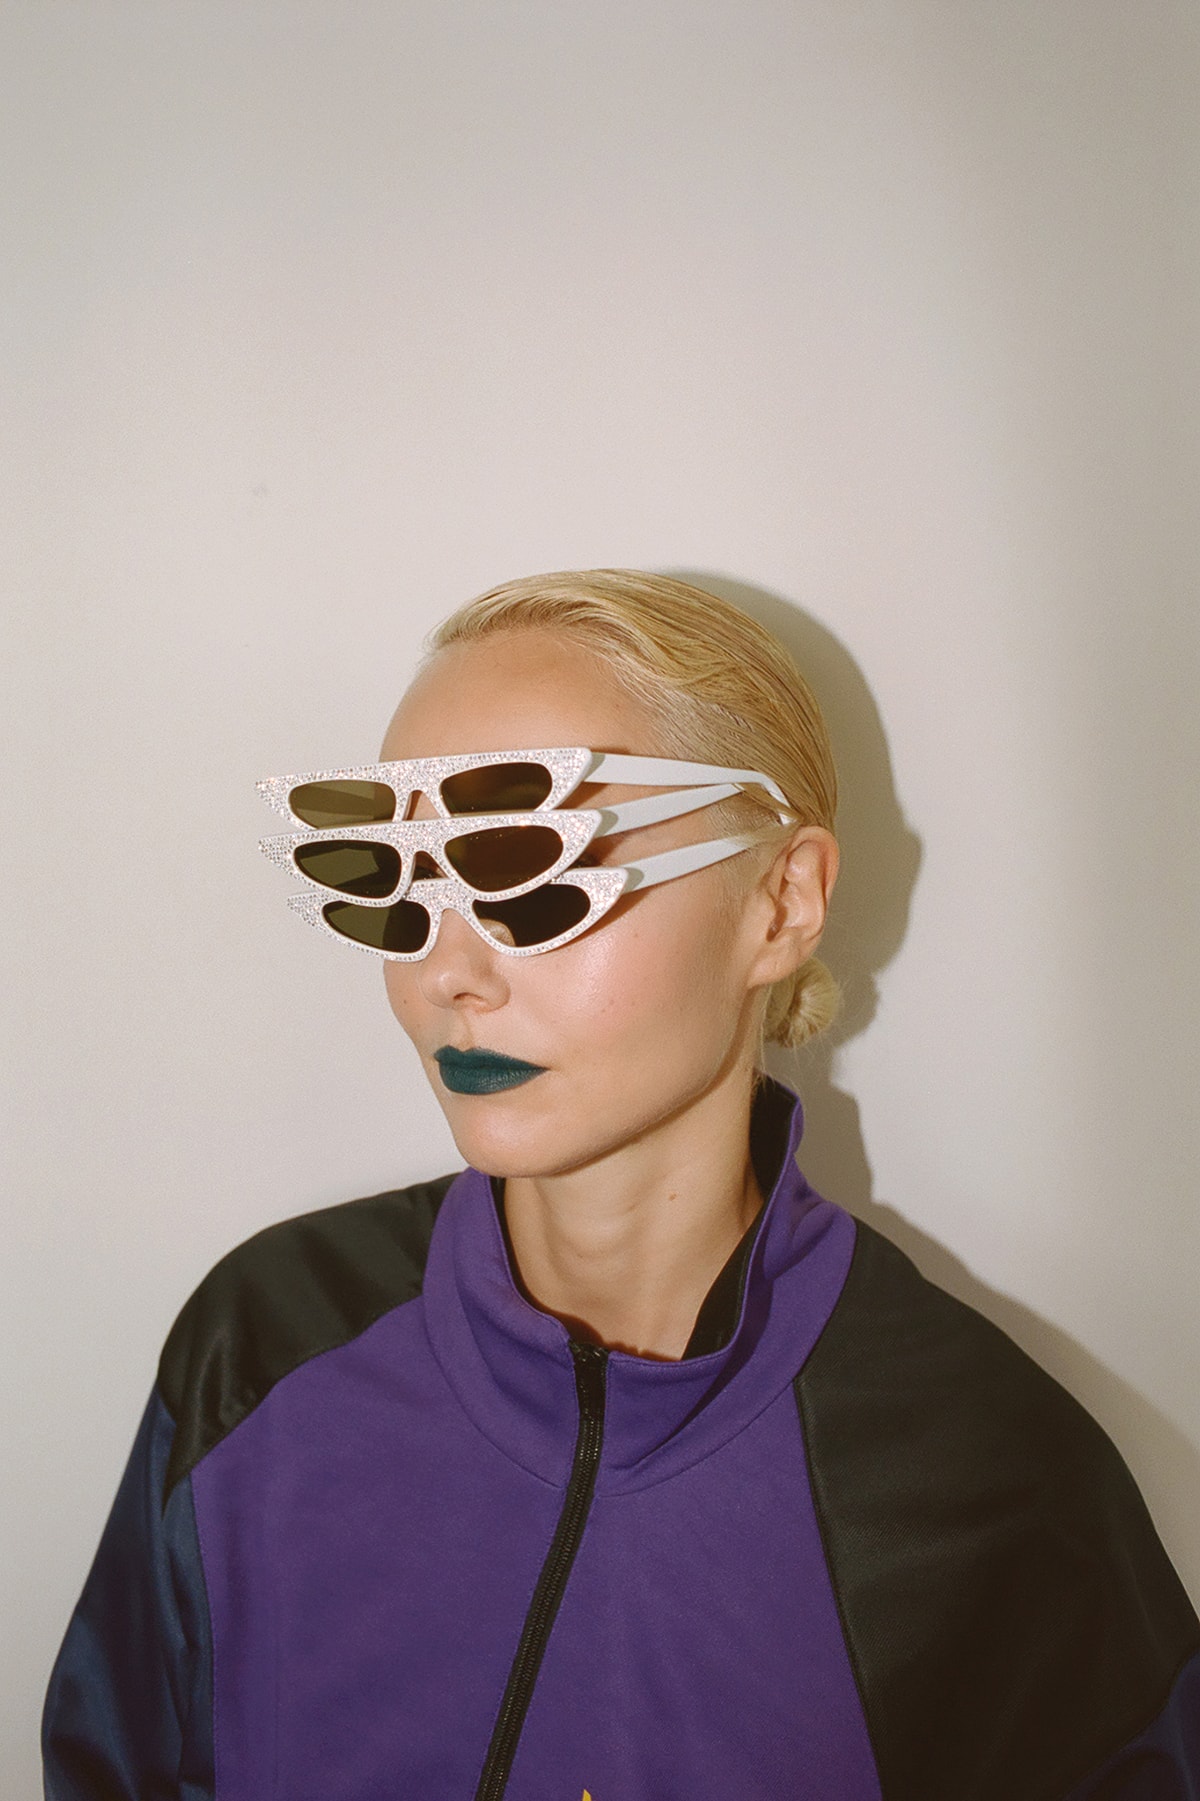 KM20 Olga Karput Sunglasses Andy Wolf Collaboration Eyewear Lookbook